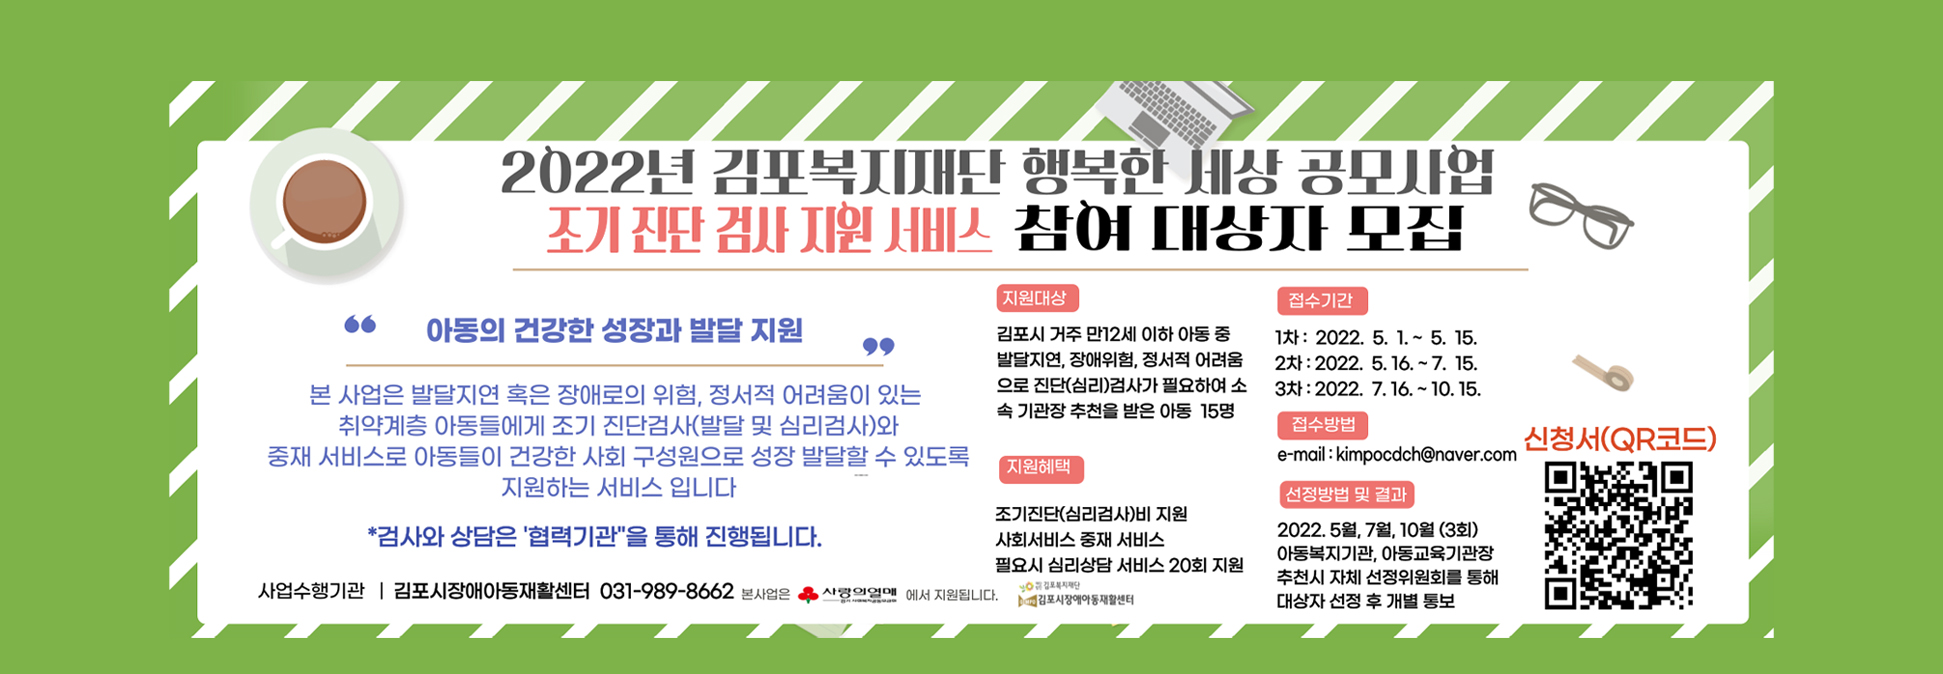 김포복지재단 행복한 세상 공모사업 참여자 모집